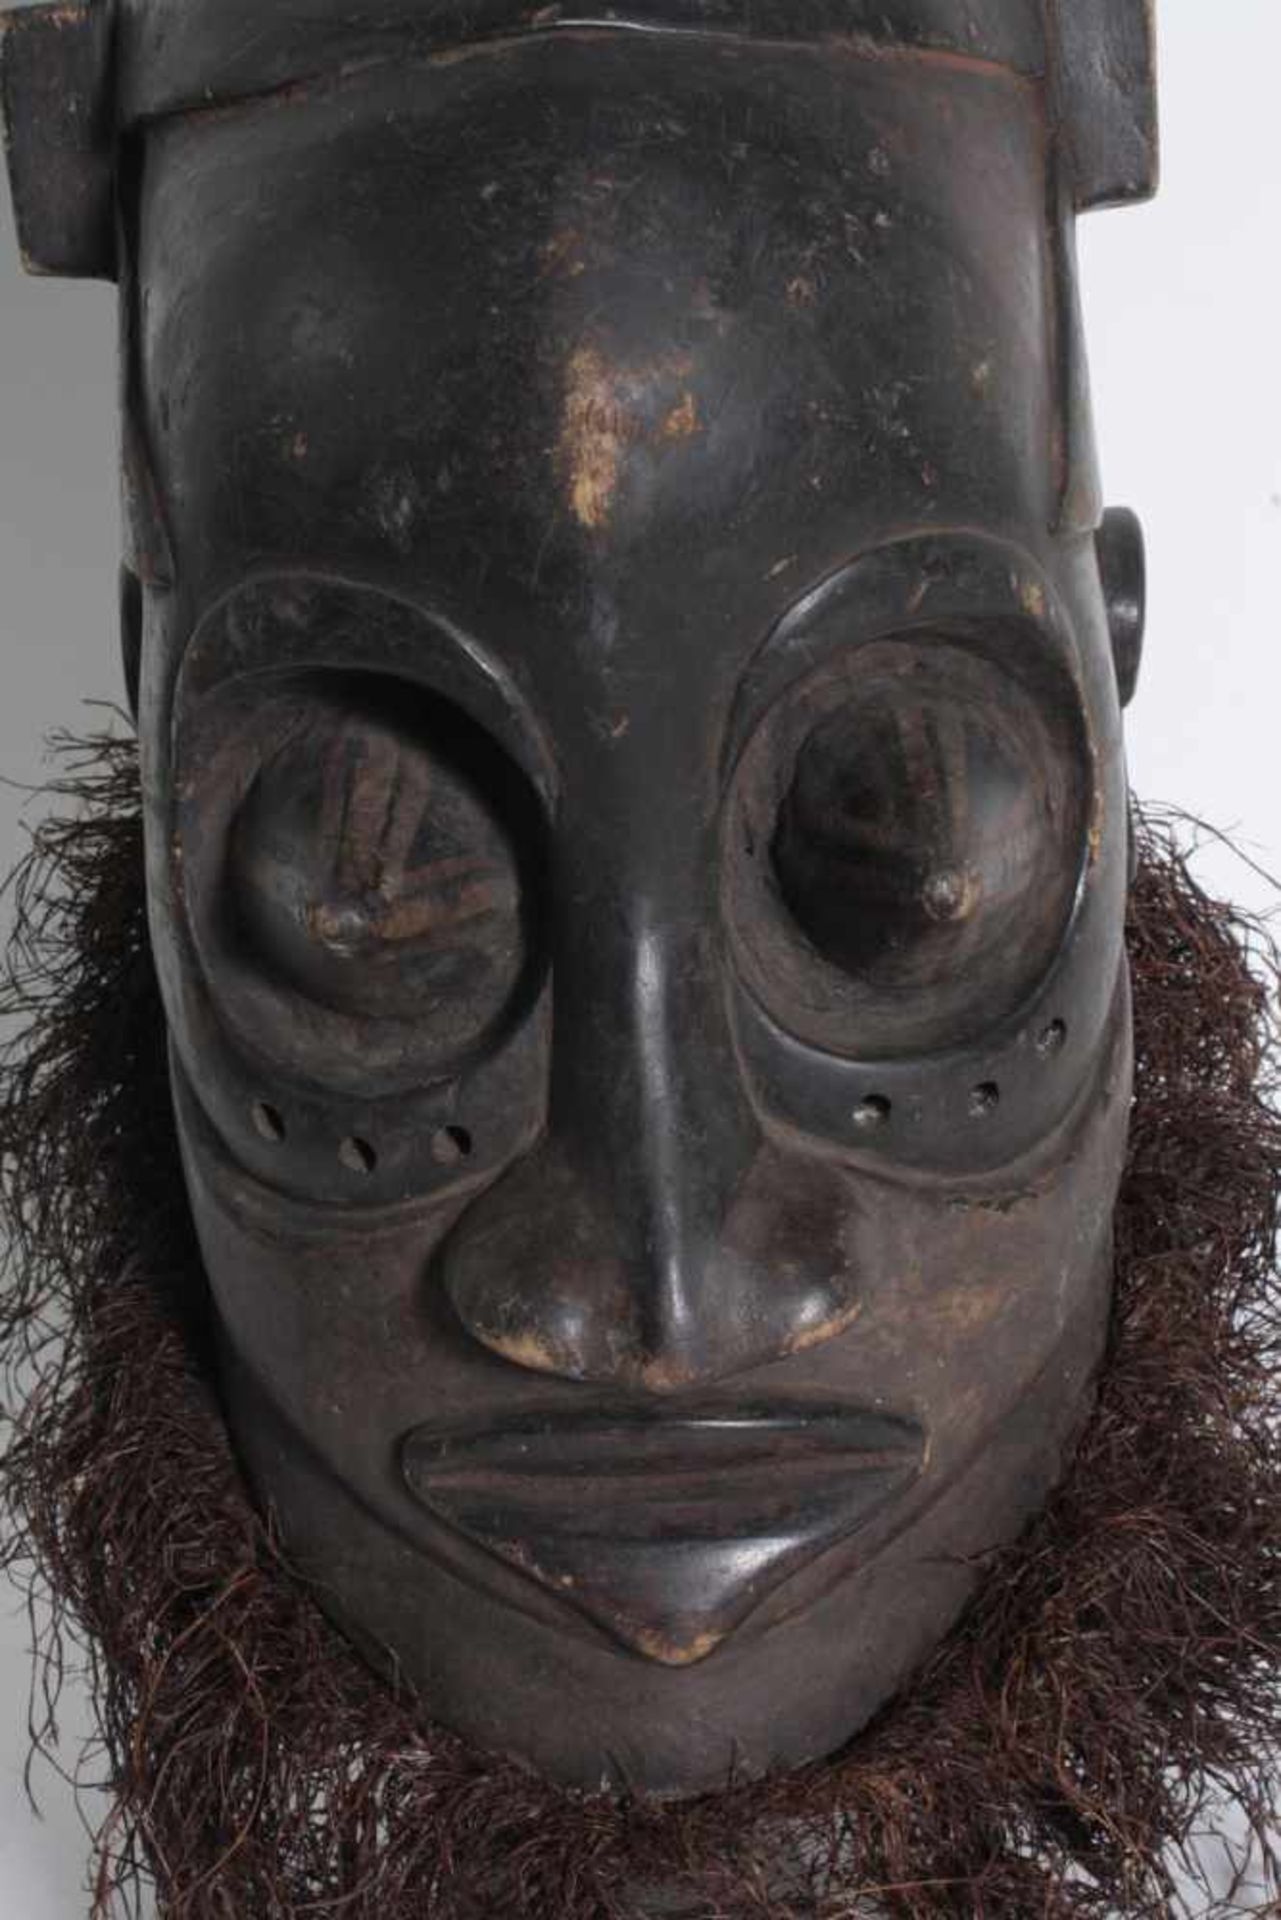 Königliche, gehörnte Maske des Kuba, D. R. Kongo, 1. Hälfte 20. Jh.Große gehörnte Gesichtsmaske, - Bild 2 aus 7